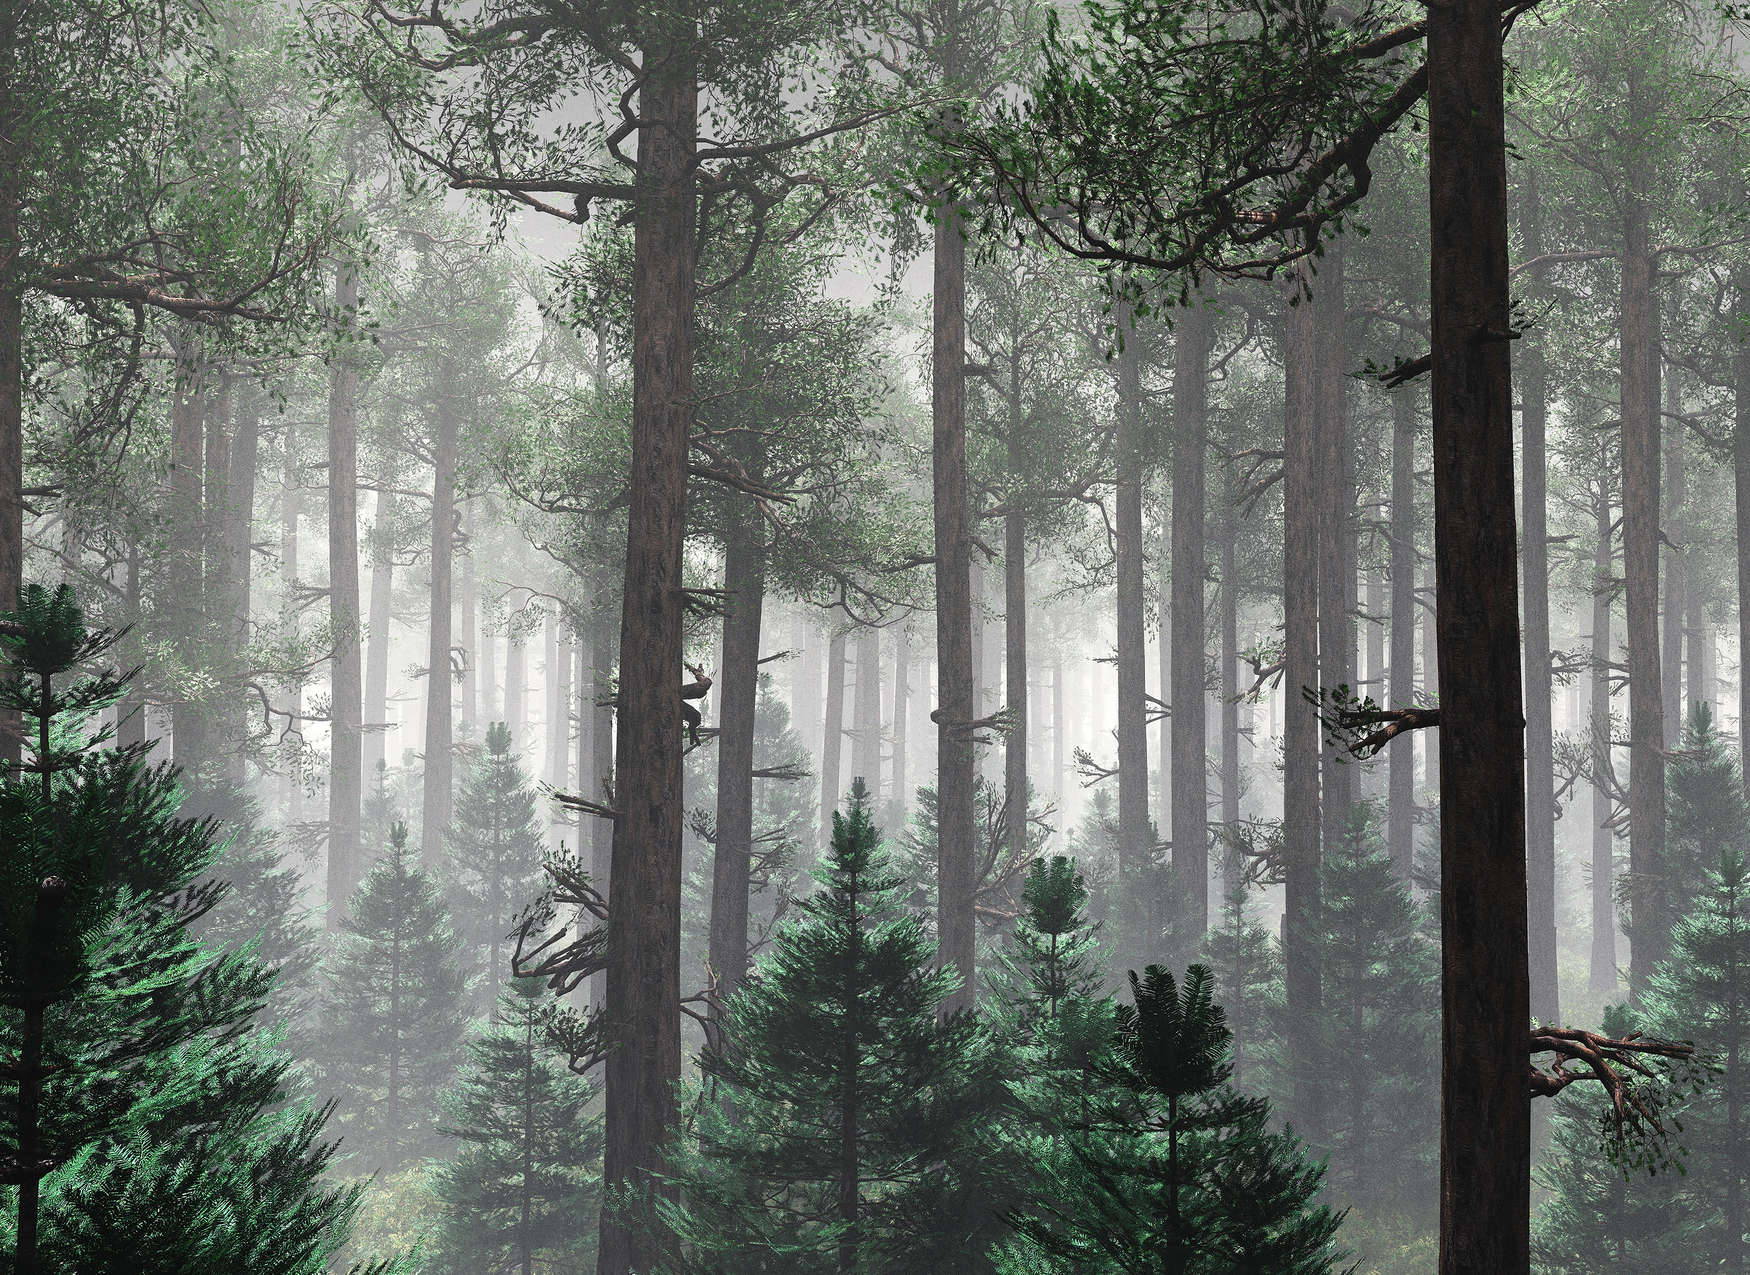             Fotomurali Foresta nella nebbia con grandi alberi - Verde, Marrone, Grigio
        